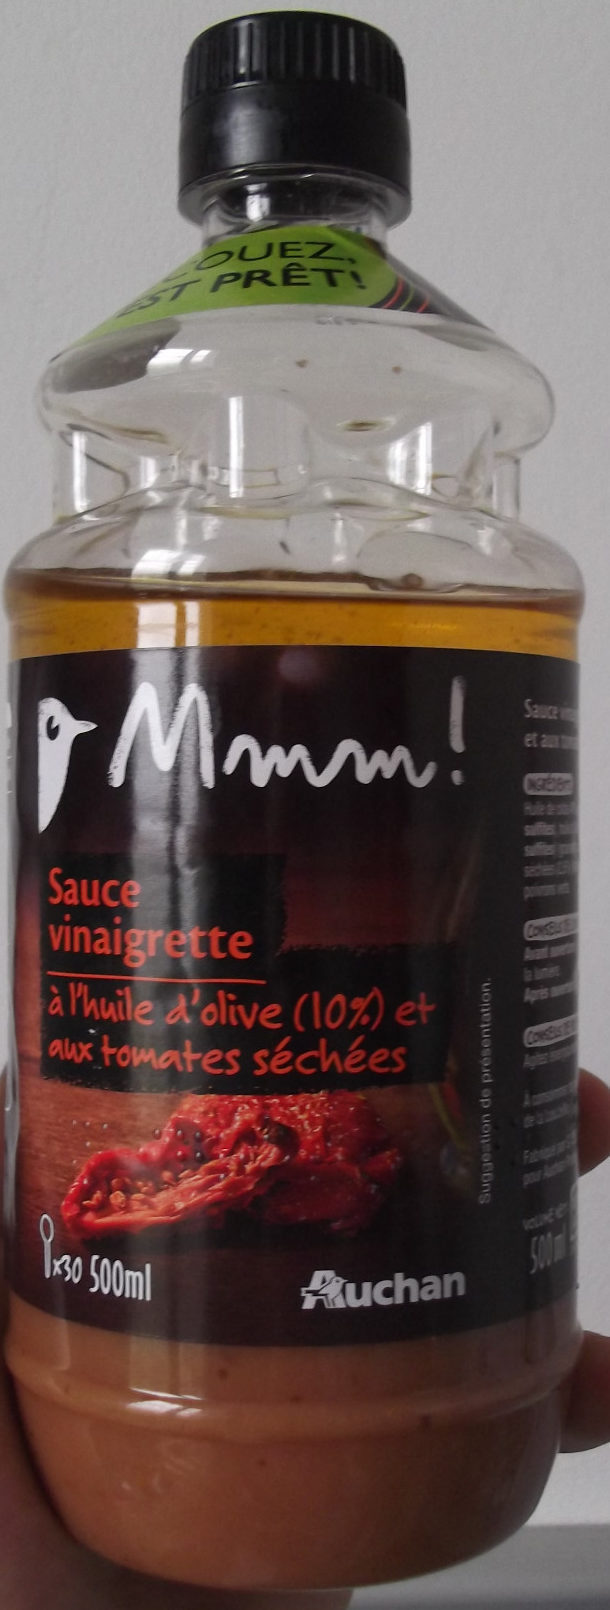 Sauce vinaigrette à l'huile d'olive et aux tomates séchées - Product - fr